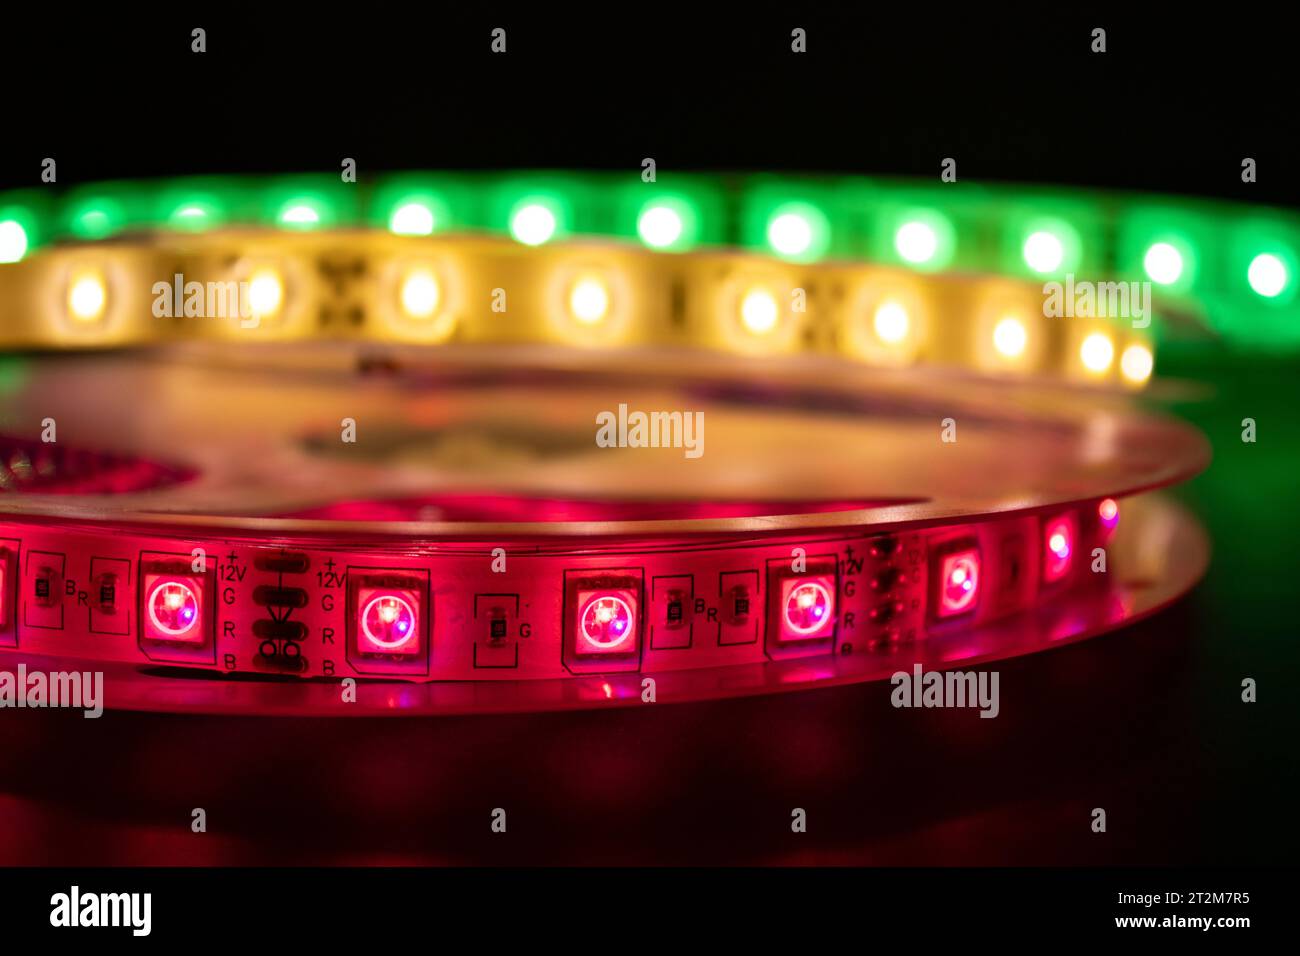 Bobina con rotolo di strisce luminose LED luminose posizionate sul tavolo, colore rosa, verde e bianco caldo Foto Stock